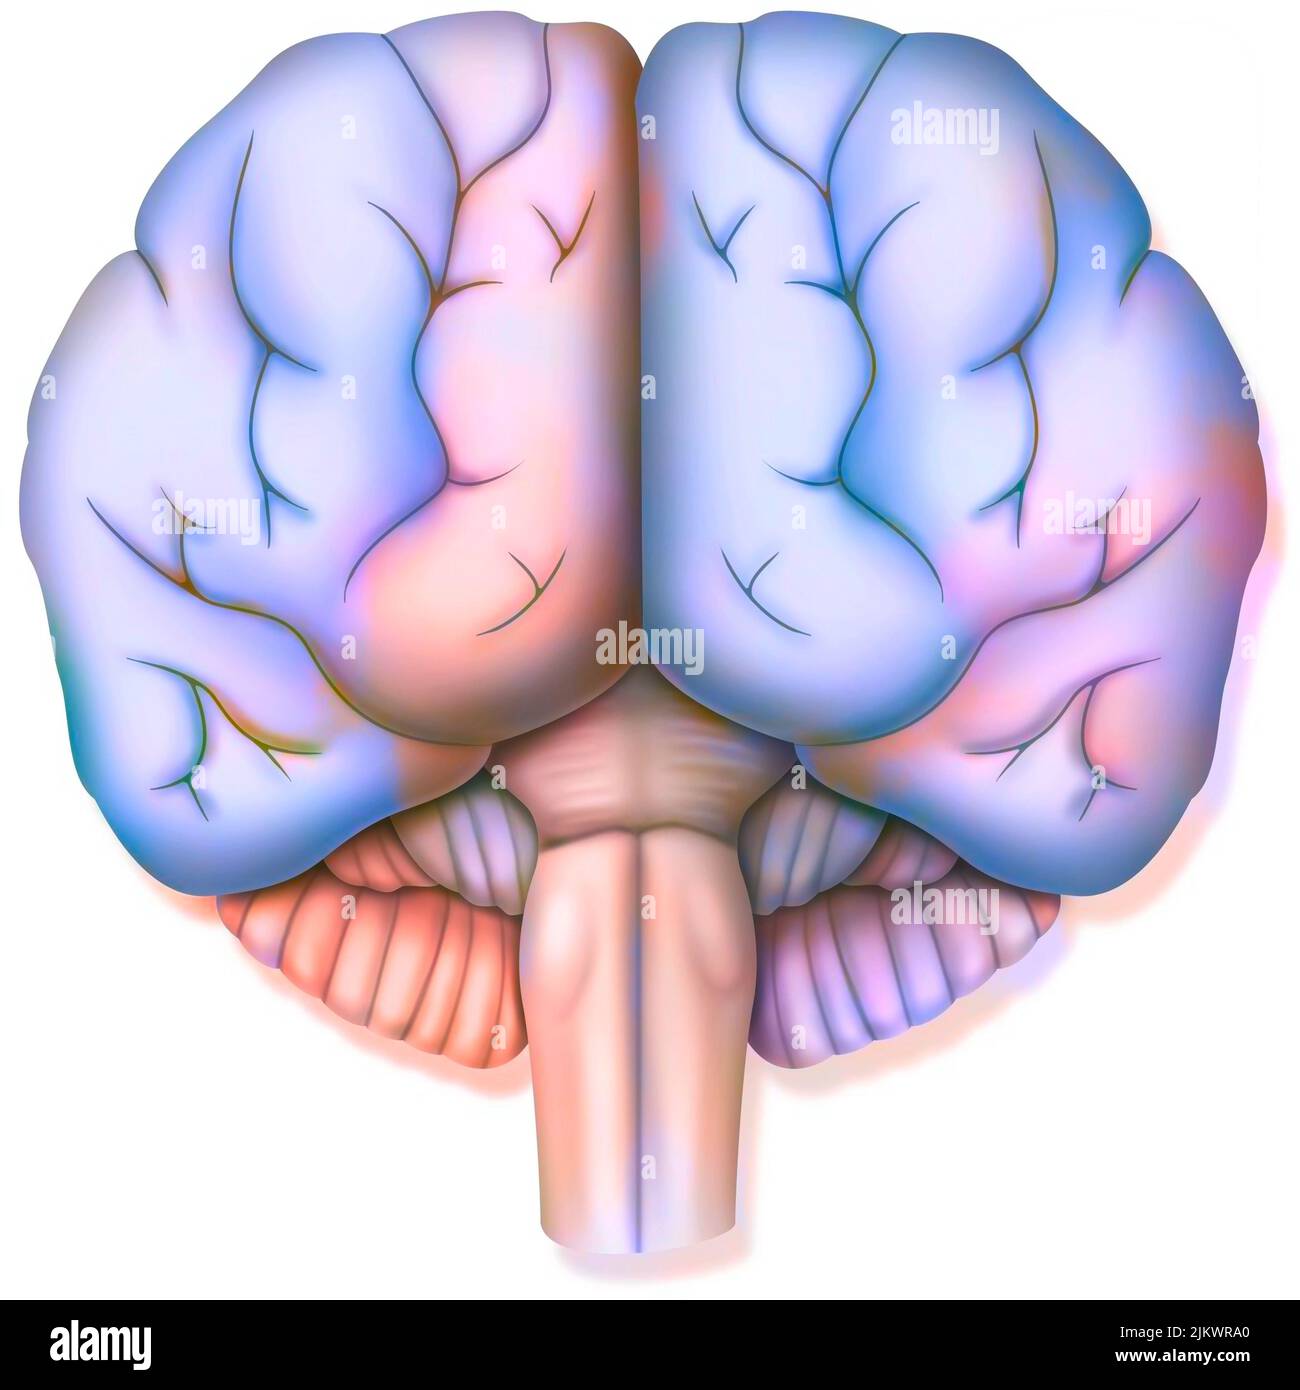 Gehirn, mit den beiden Gehirnhälften, dem Zerebellum und dem Hirnstamm. Stockfoto